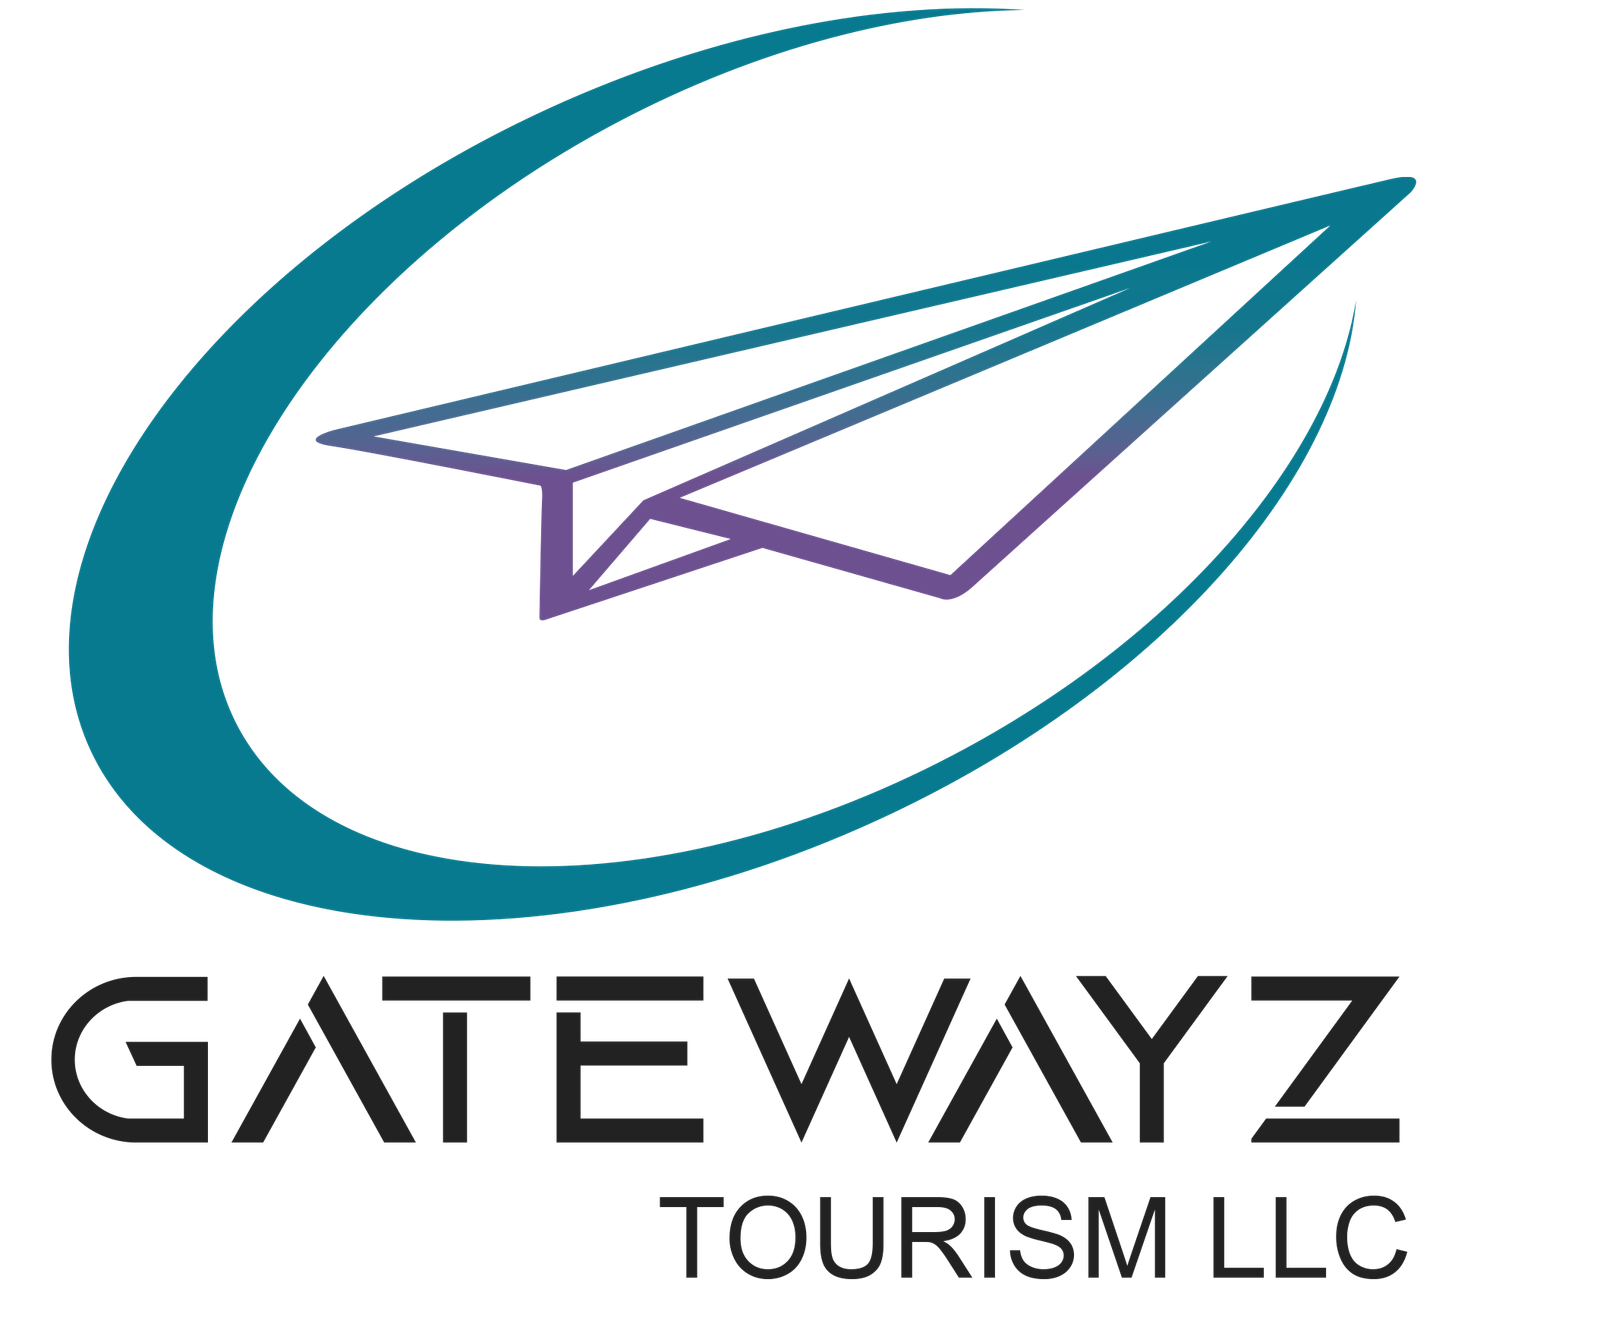 Gatewayz Tourism